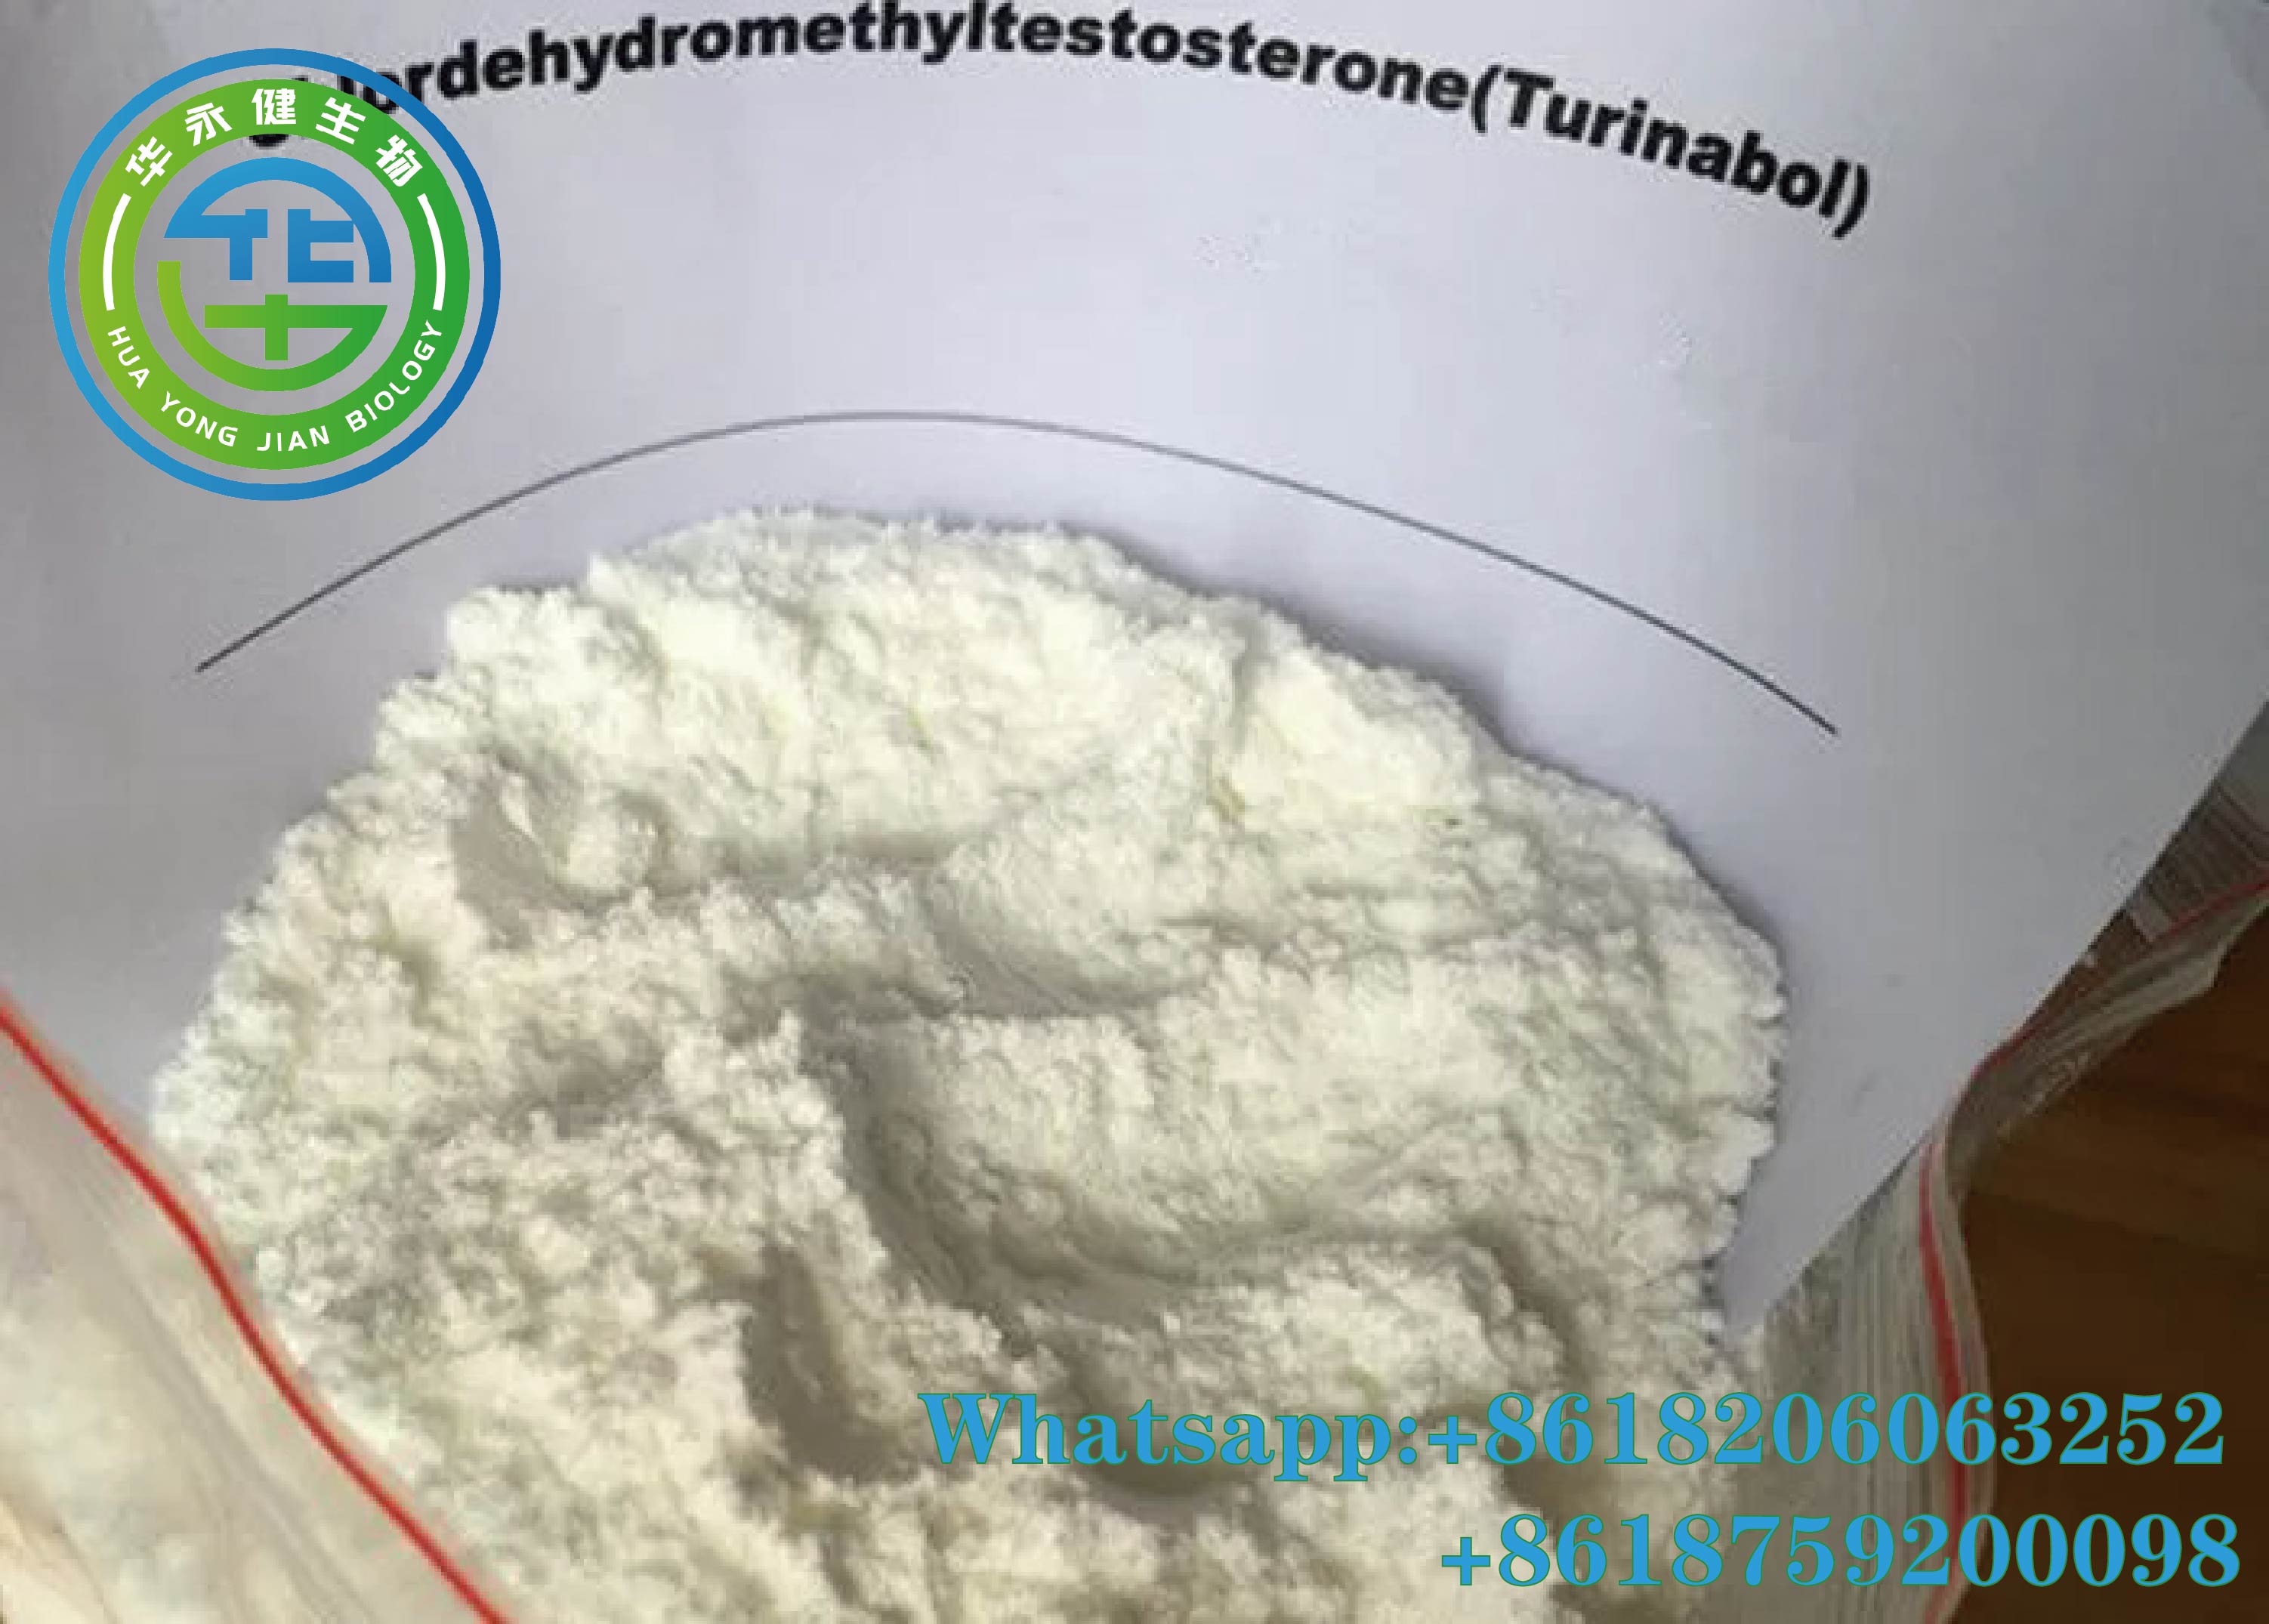 Turinabol(4-Chlorodehydromethyltestosterone) (6)